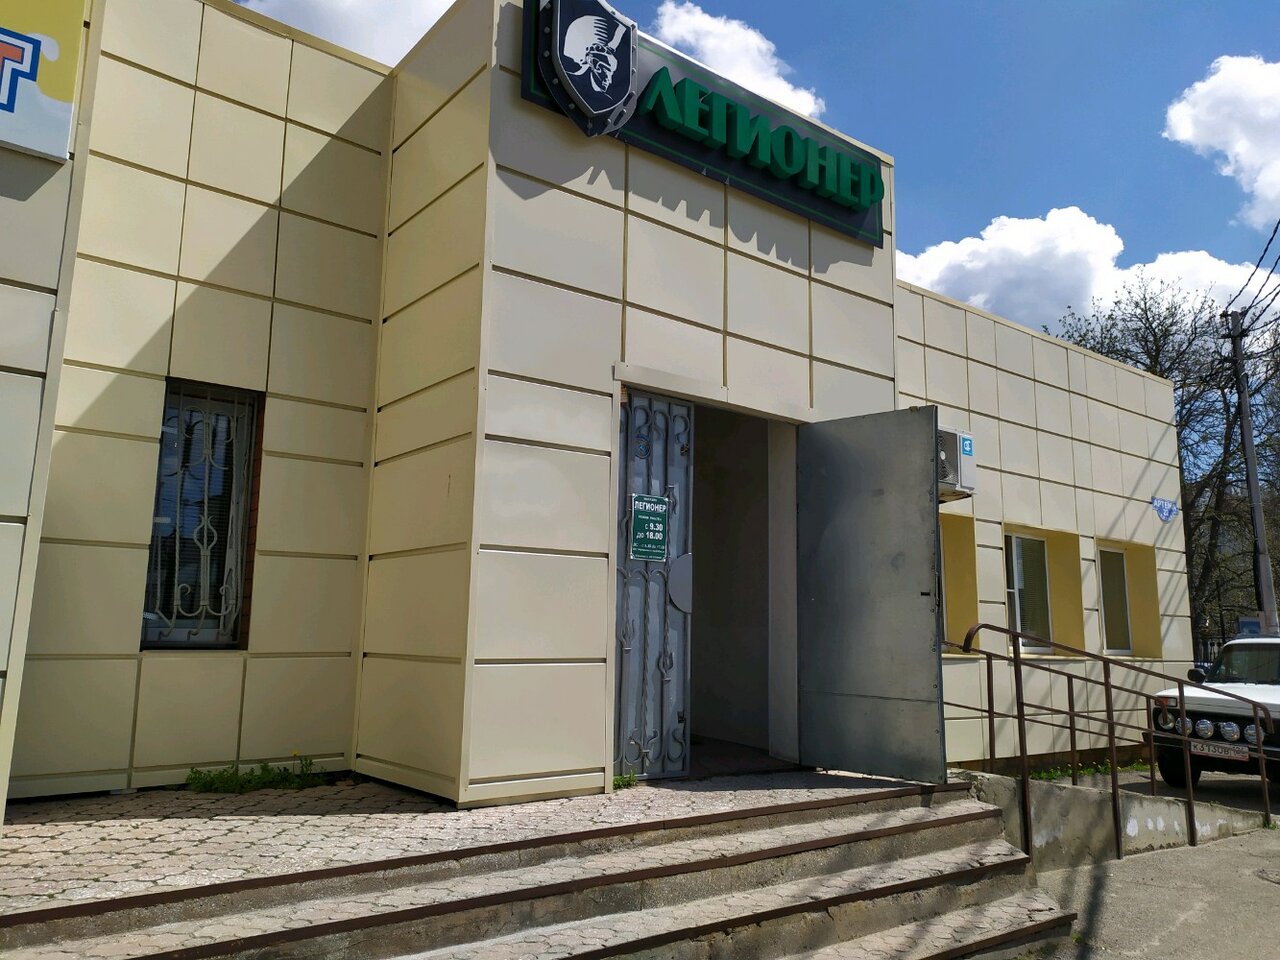 Вход в армейский магазин "Легионер" на Артема в Ставрополе